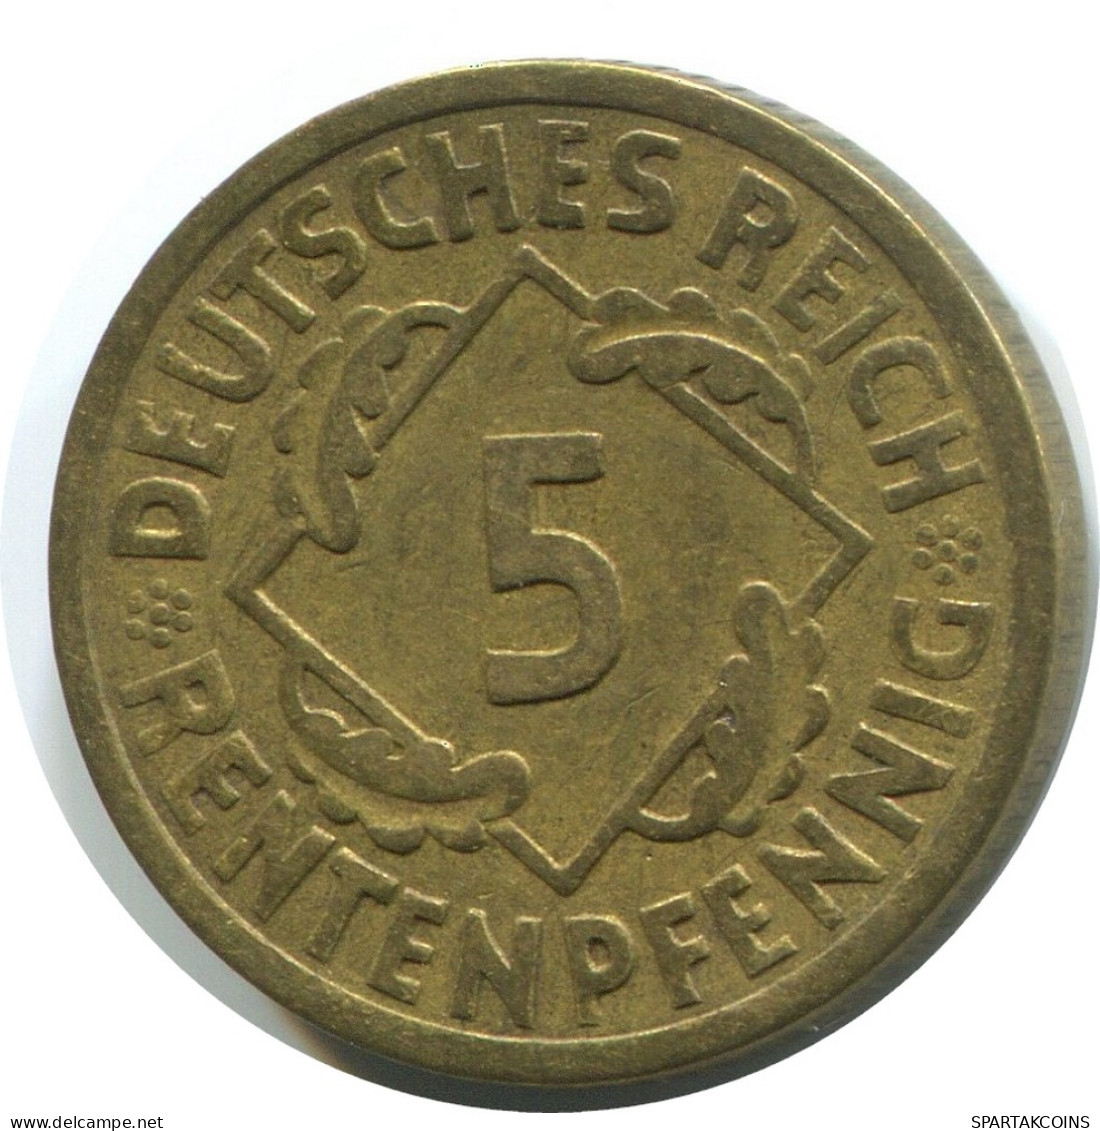 5 REINTENPFENNIG 1924 A GERMANY Coin #AD817.9.U - 5 Rentenpfennig & 5 Reichspfennig